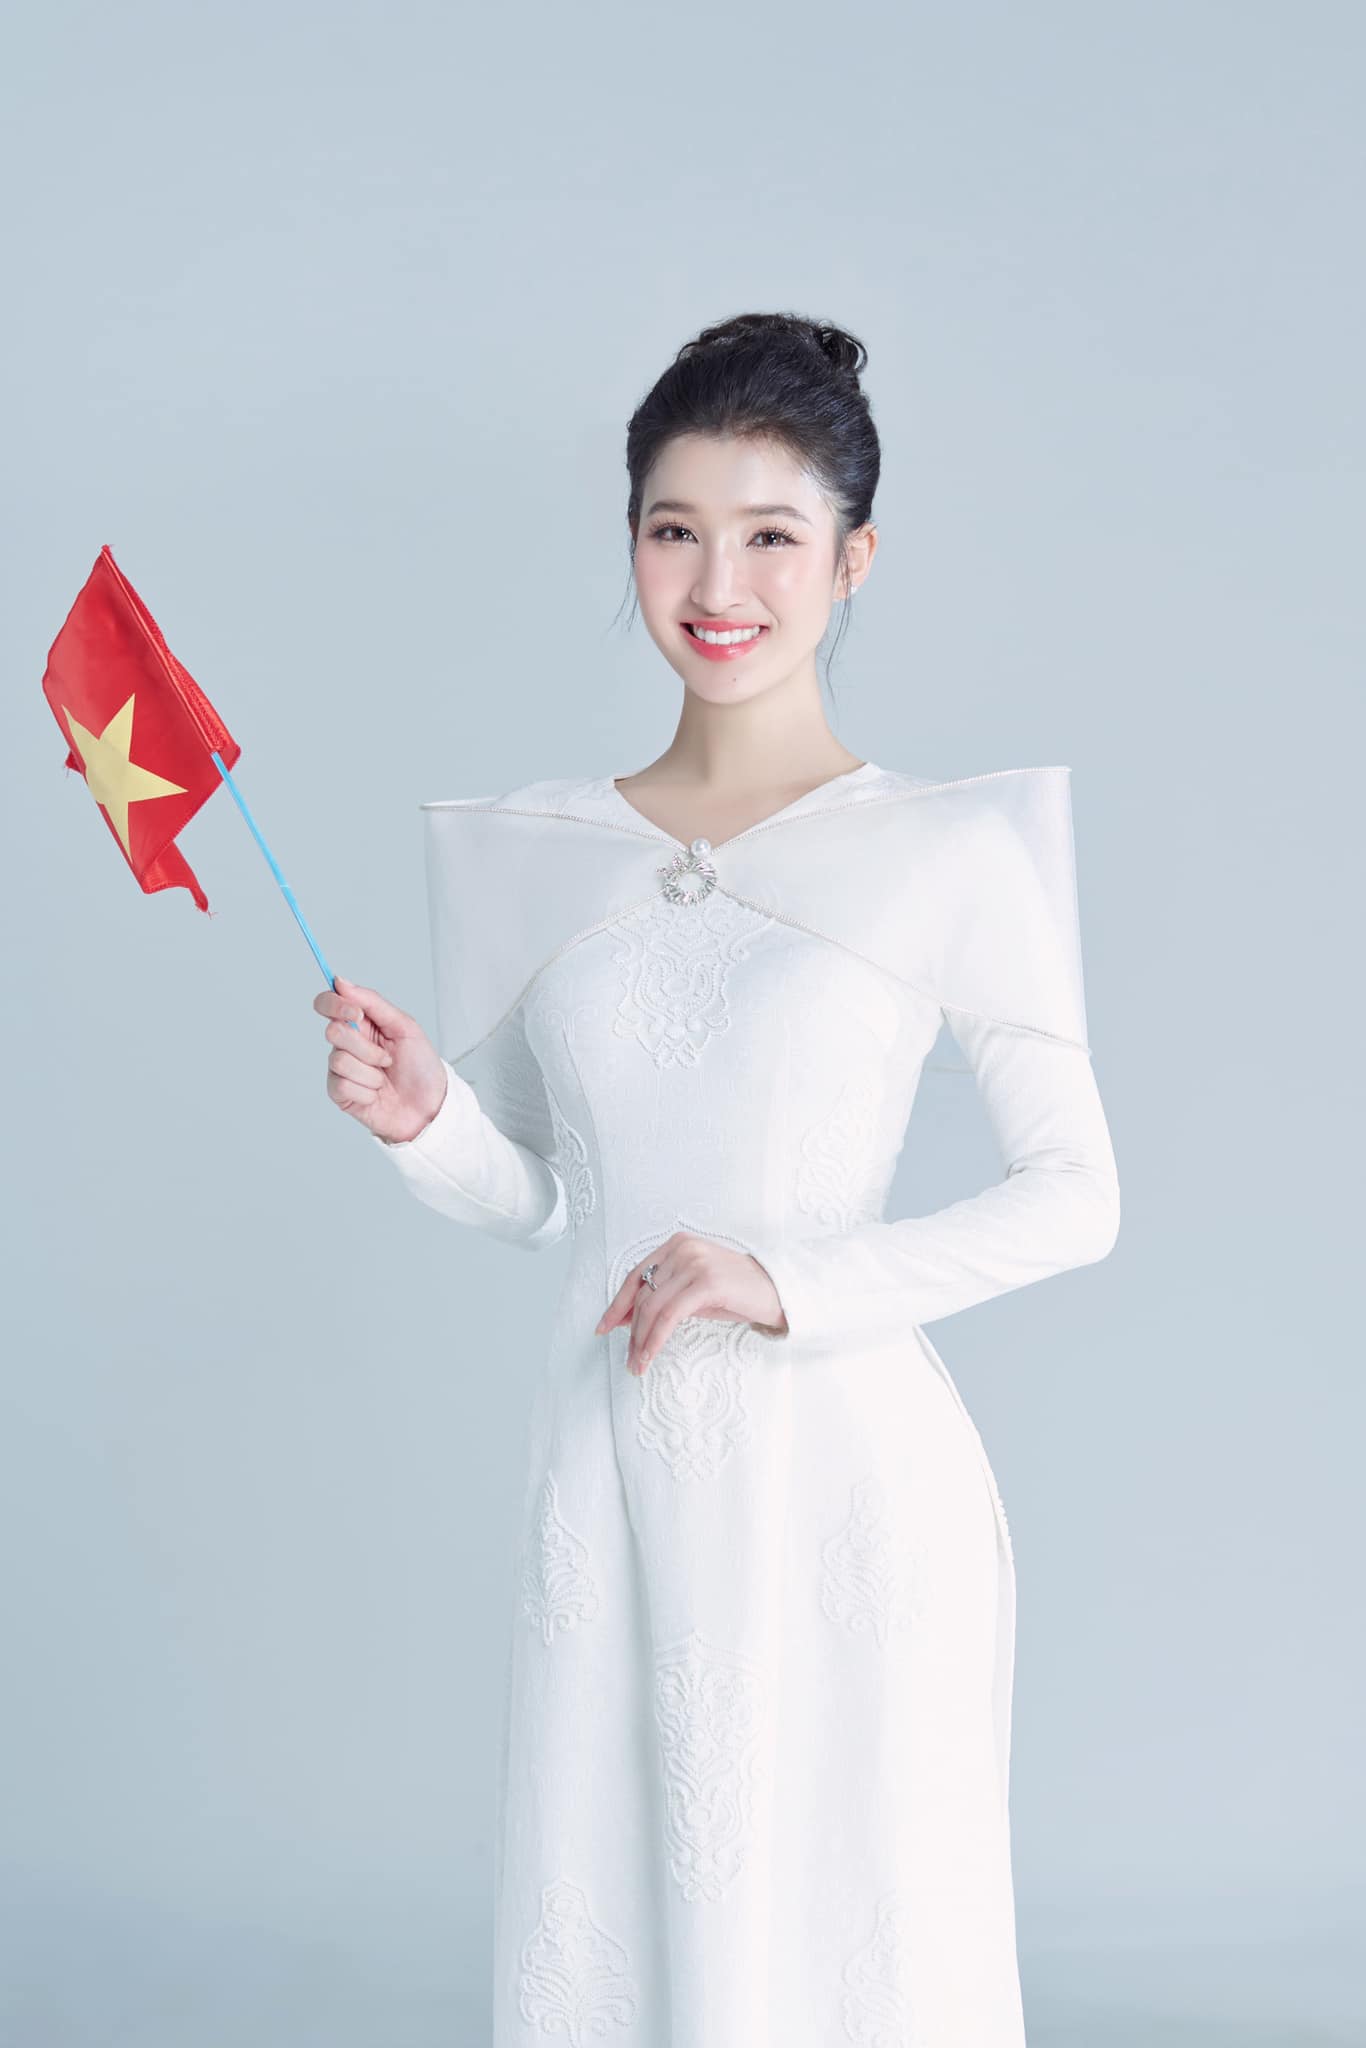 Phương Nhi được dự đoán lọt Top 15 Hoa hậu Quốc tế 2023, xem đại diện Việt Nam thi chung kết ở đâu? - ảnh 6